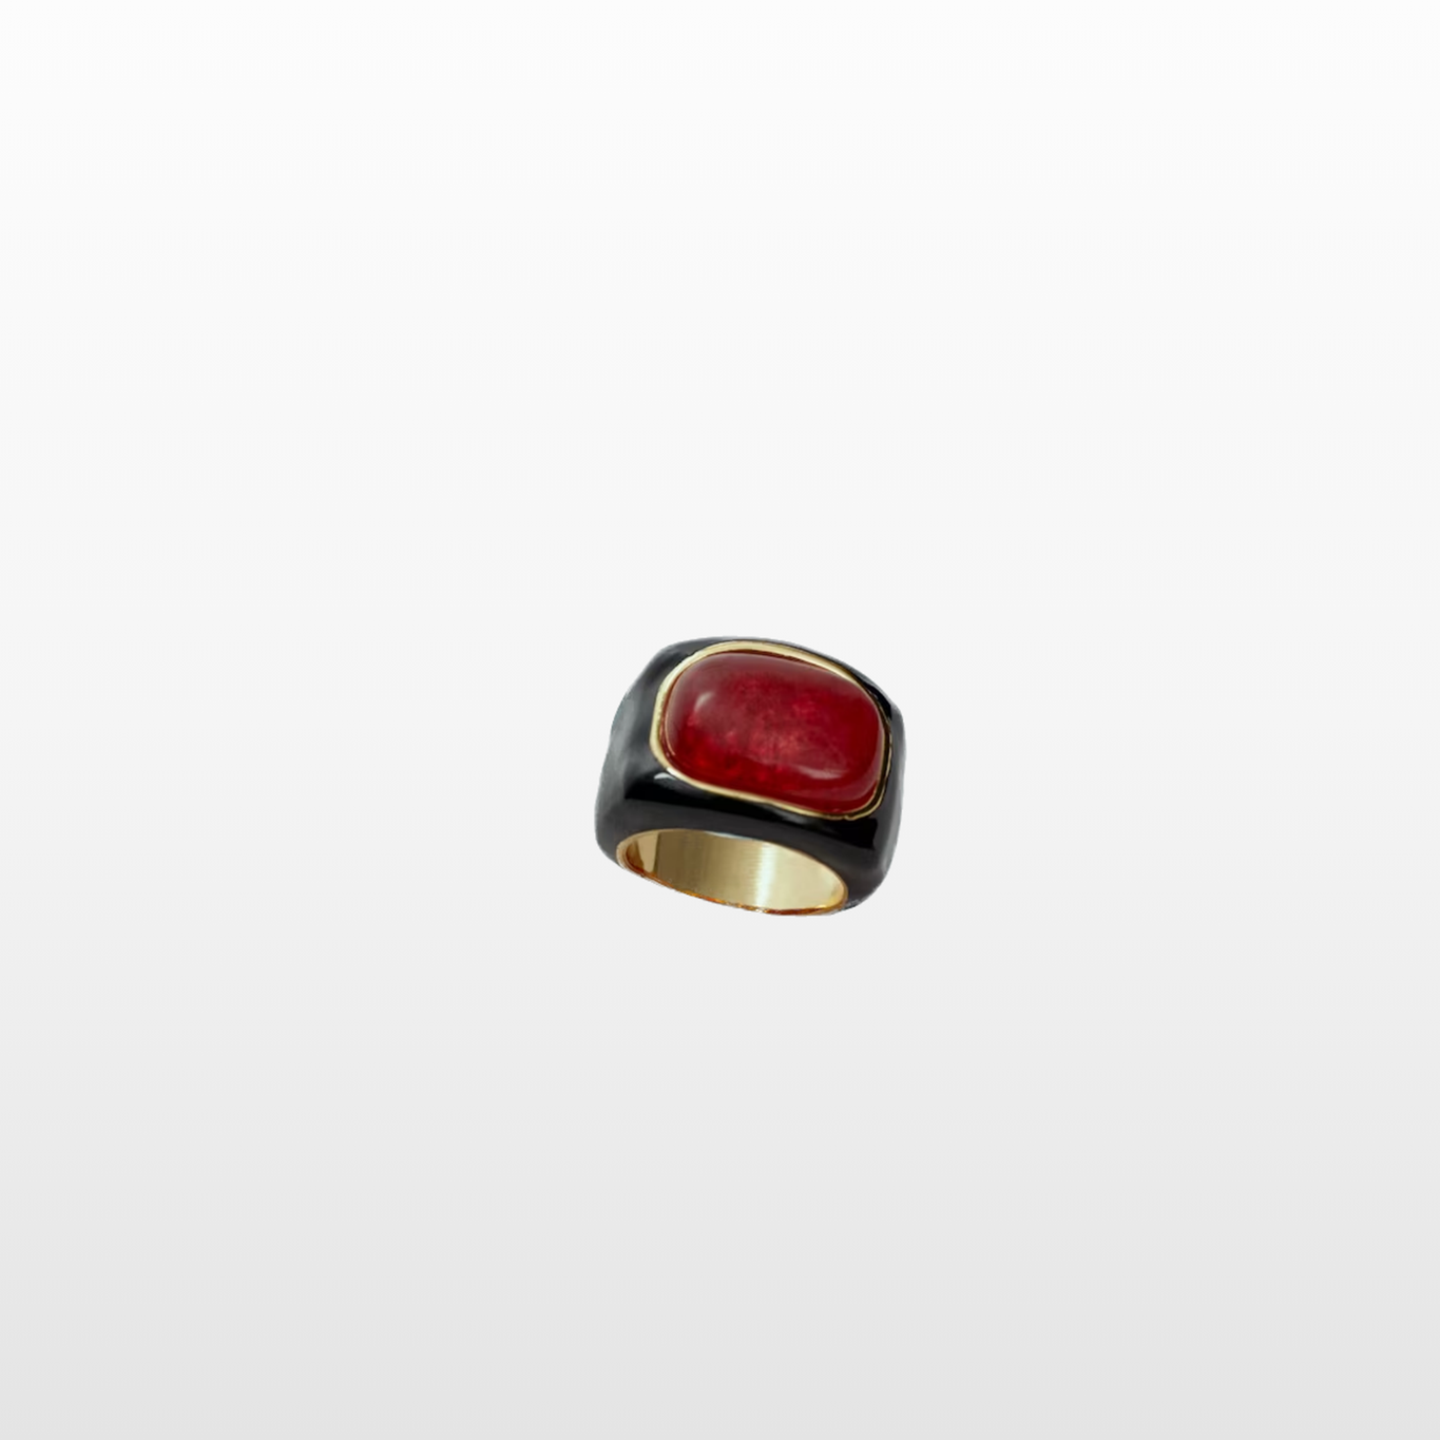 Dieser Maxi-Ring mit Quarz-Detail in Rot besticht mit seiner schwarzen Farbe und natürlich der Chunky-Form. Um 40 Euro bei Mango. Dazu gibt es übrigens auch den passenden Maxi-Armreifen! 